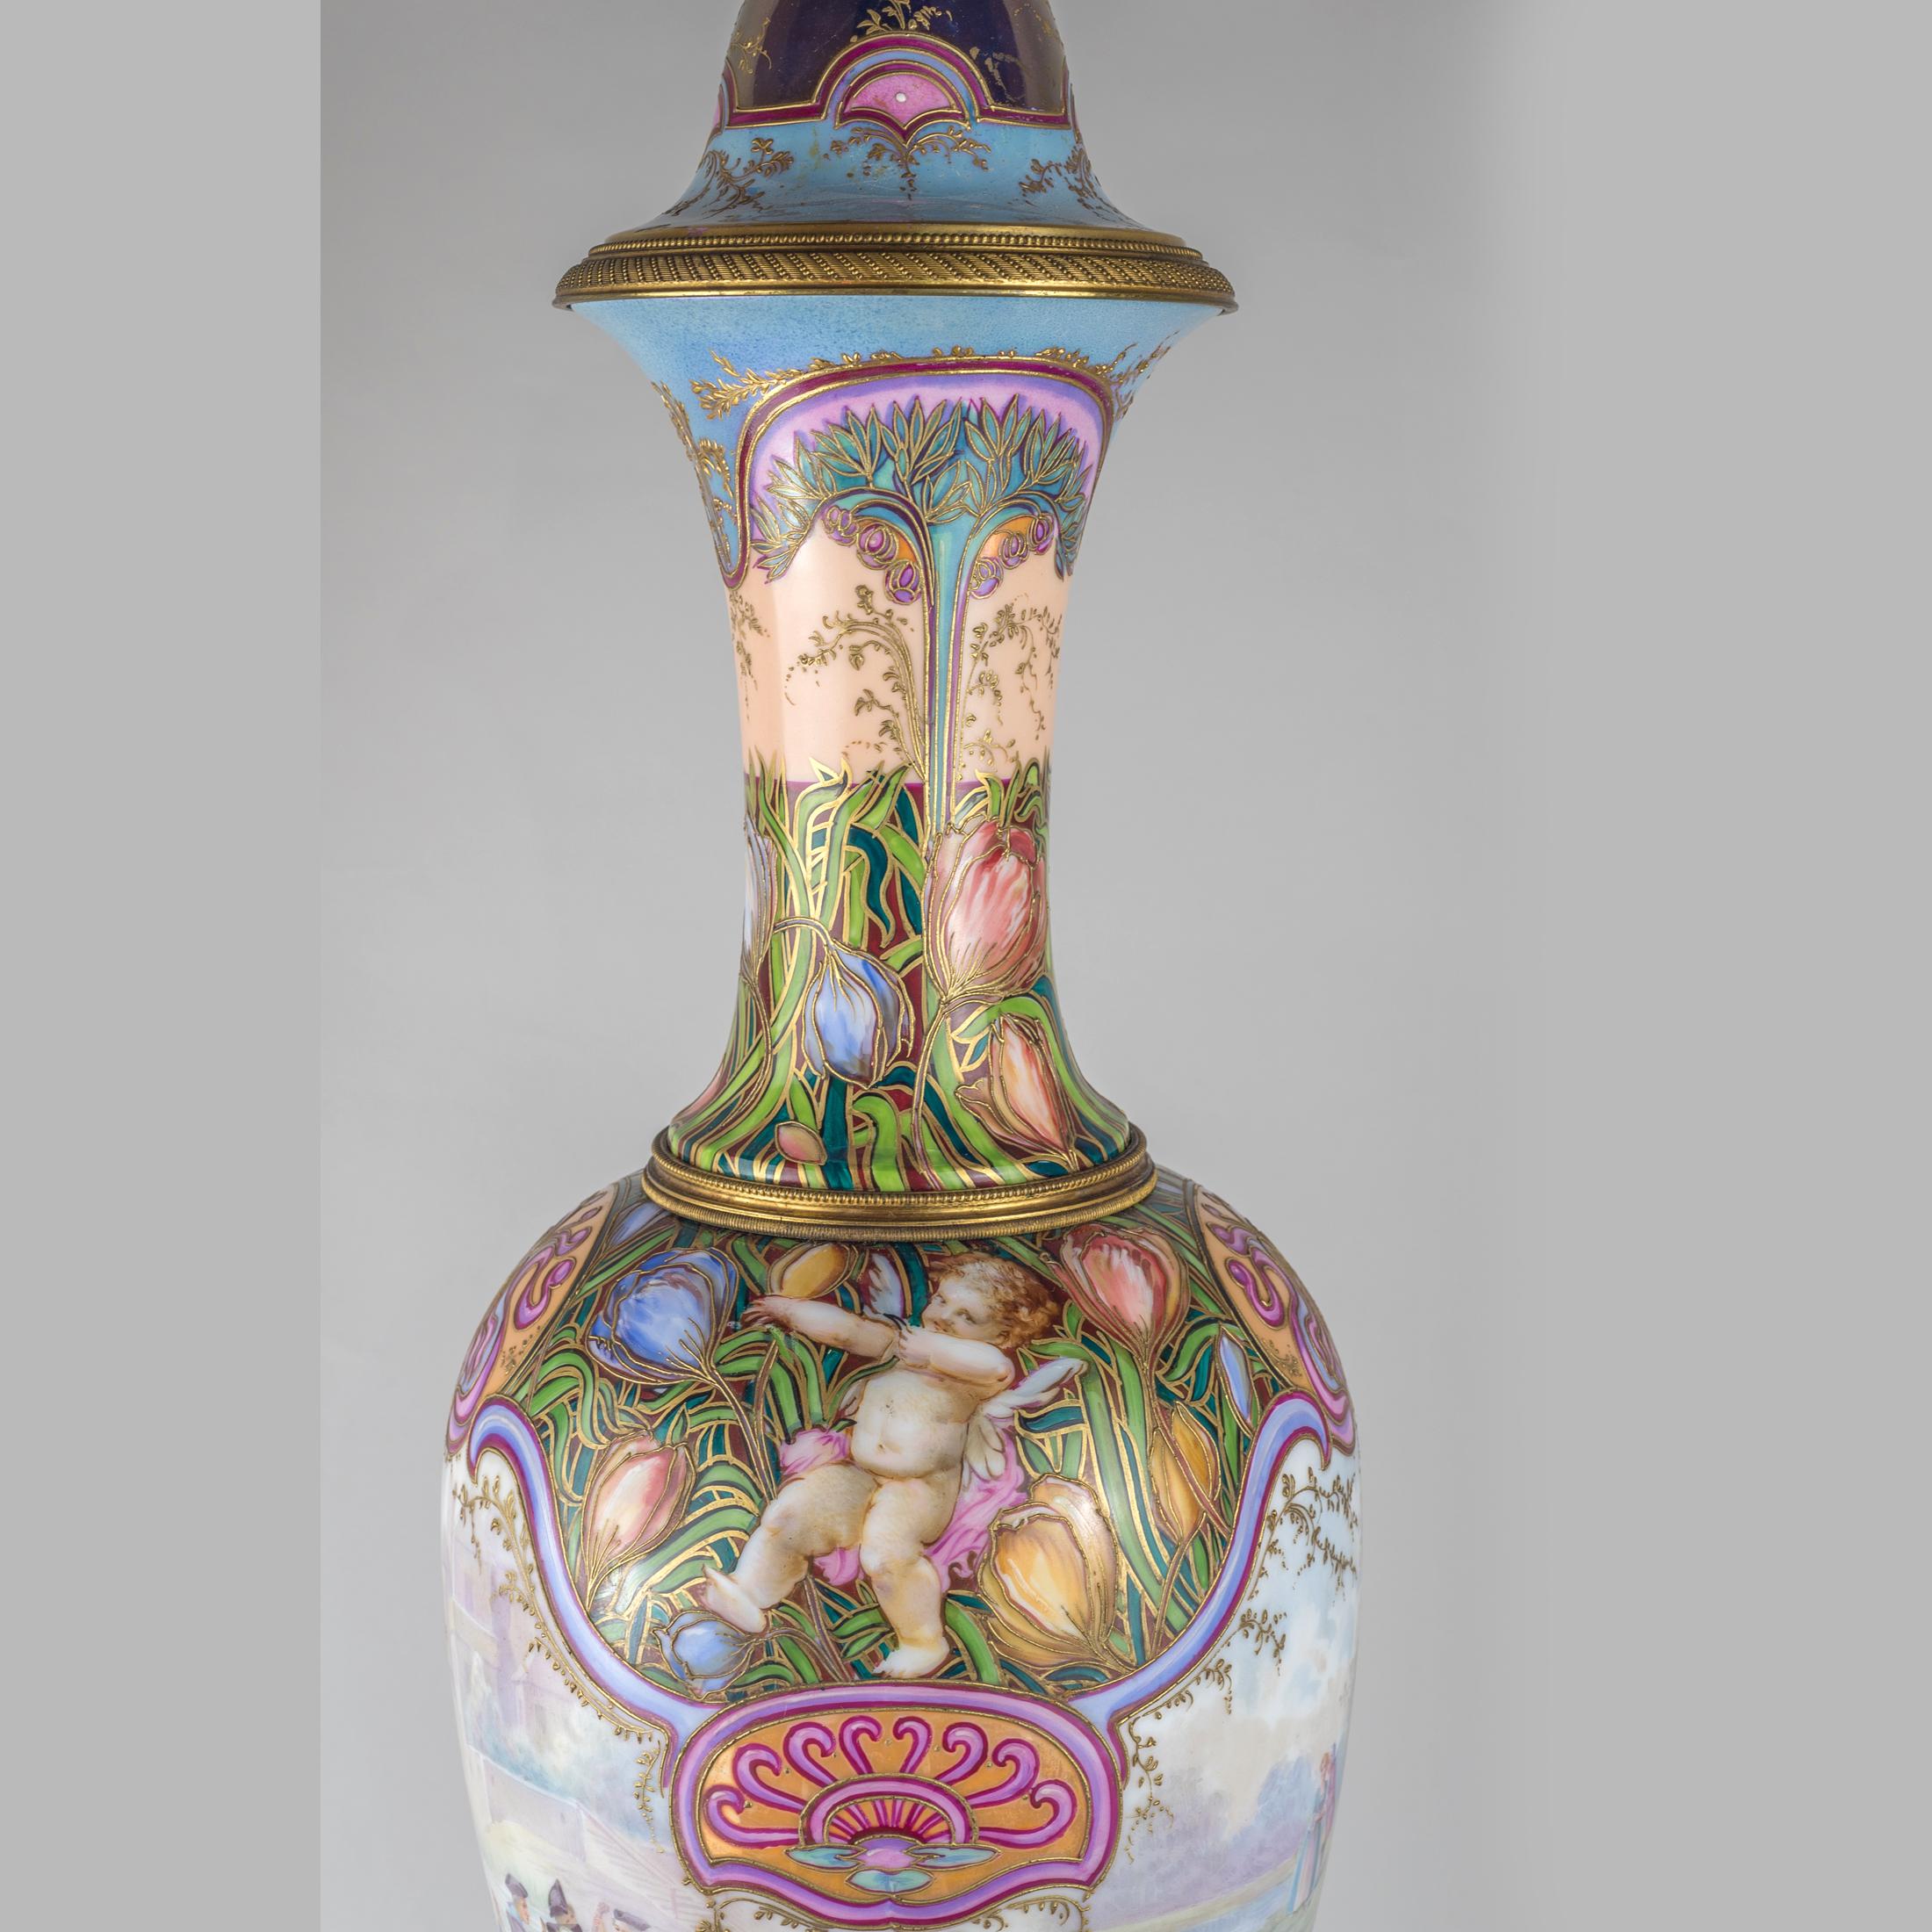 Vase portrait et couvercle en porcelaine rose irisée de style Sèvres de belle qualité. 

Date : 19ème siècle
Origine : Français
Dimension : 32 po. x 7 1/2 po.